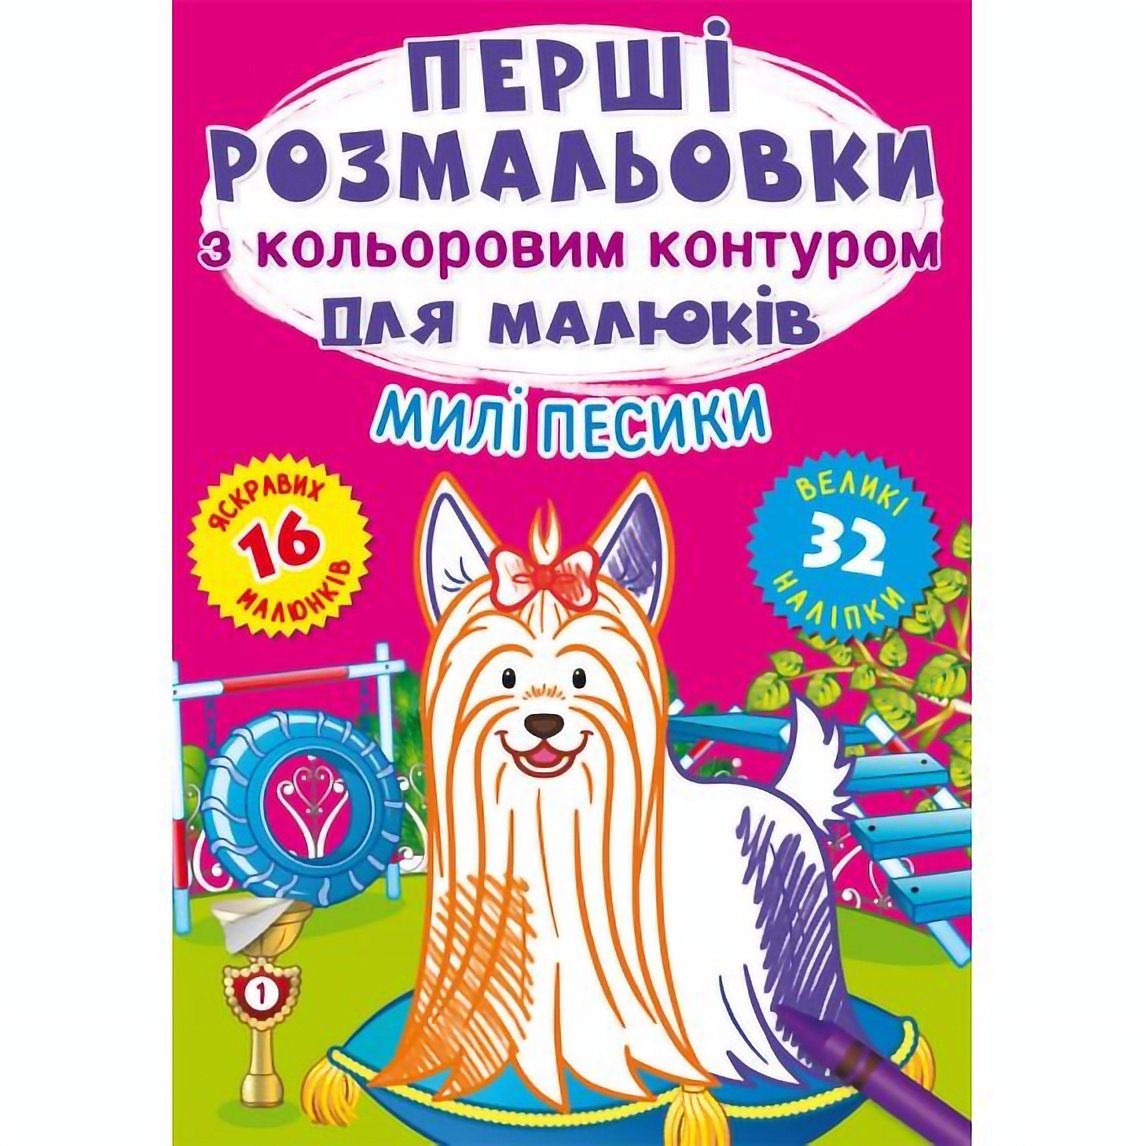 Перша розмальовка Кристал Бук Милі собачки, з кольоровим контуром, 32 великі наліпки, 16 сторінок (F00028755) - фото 1